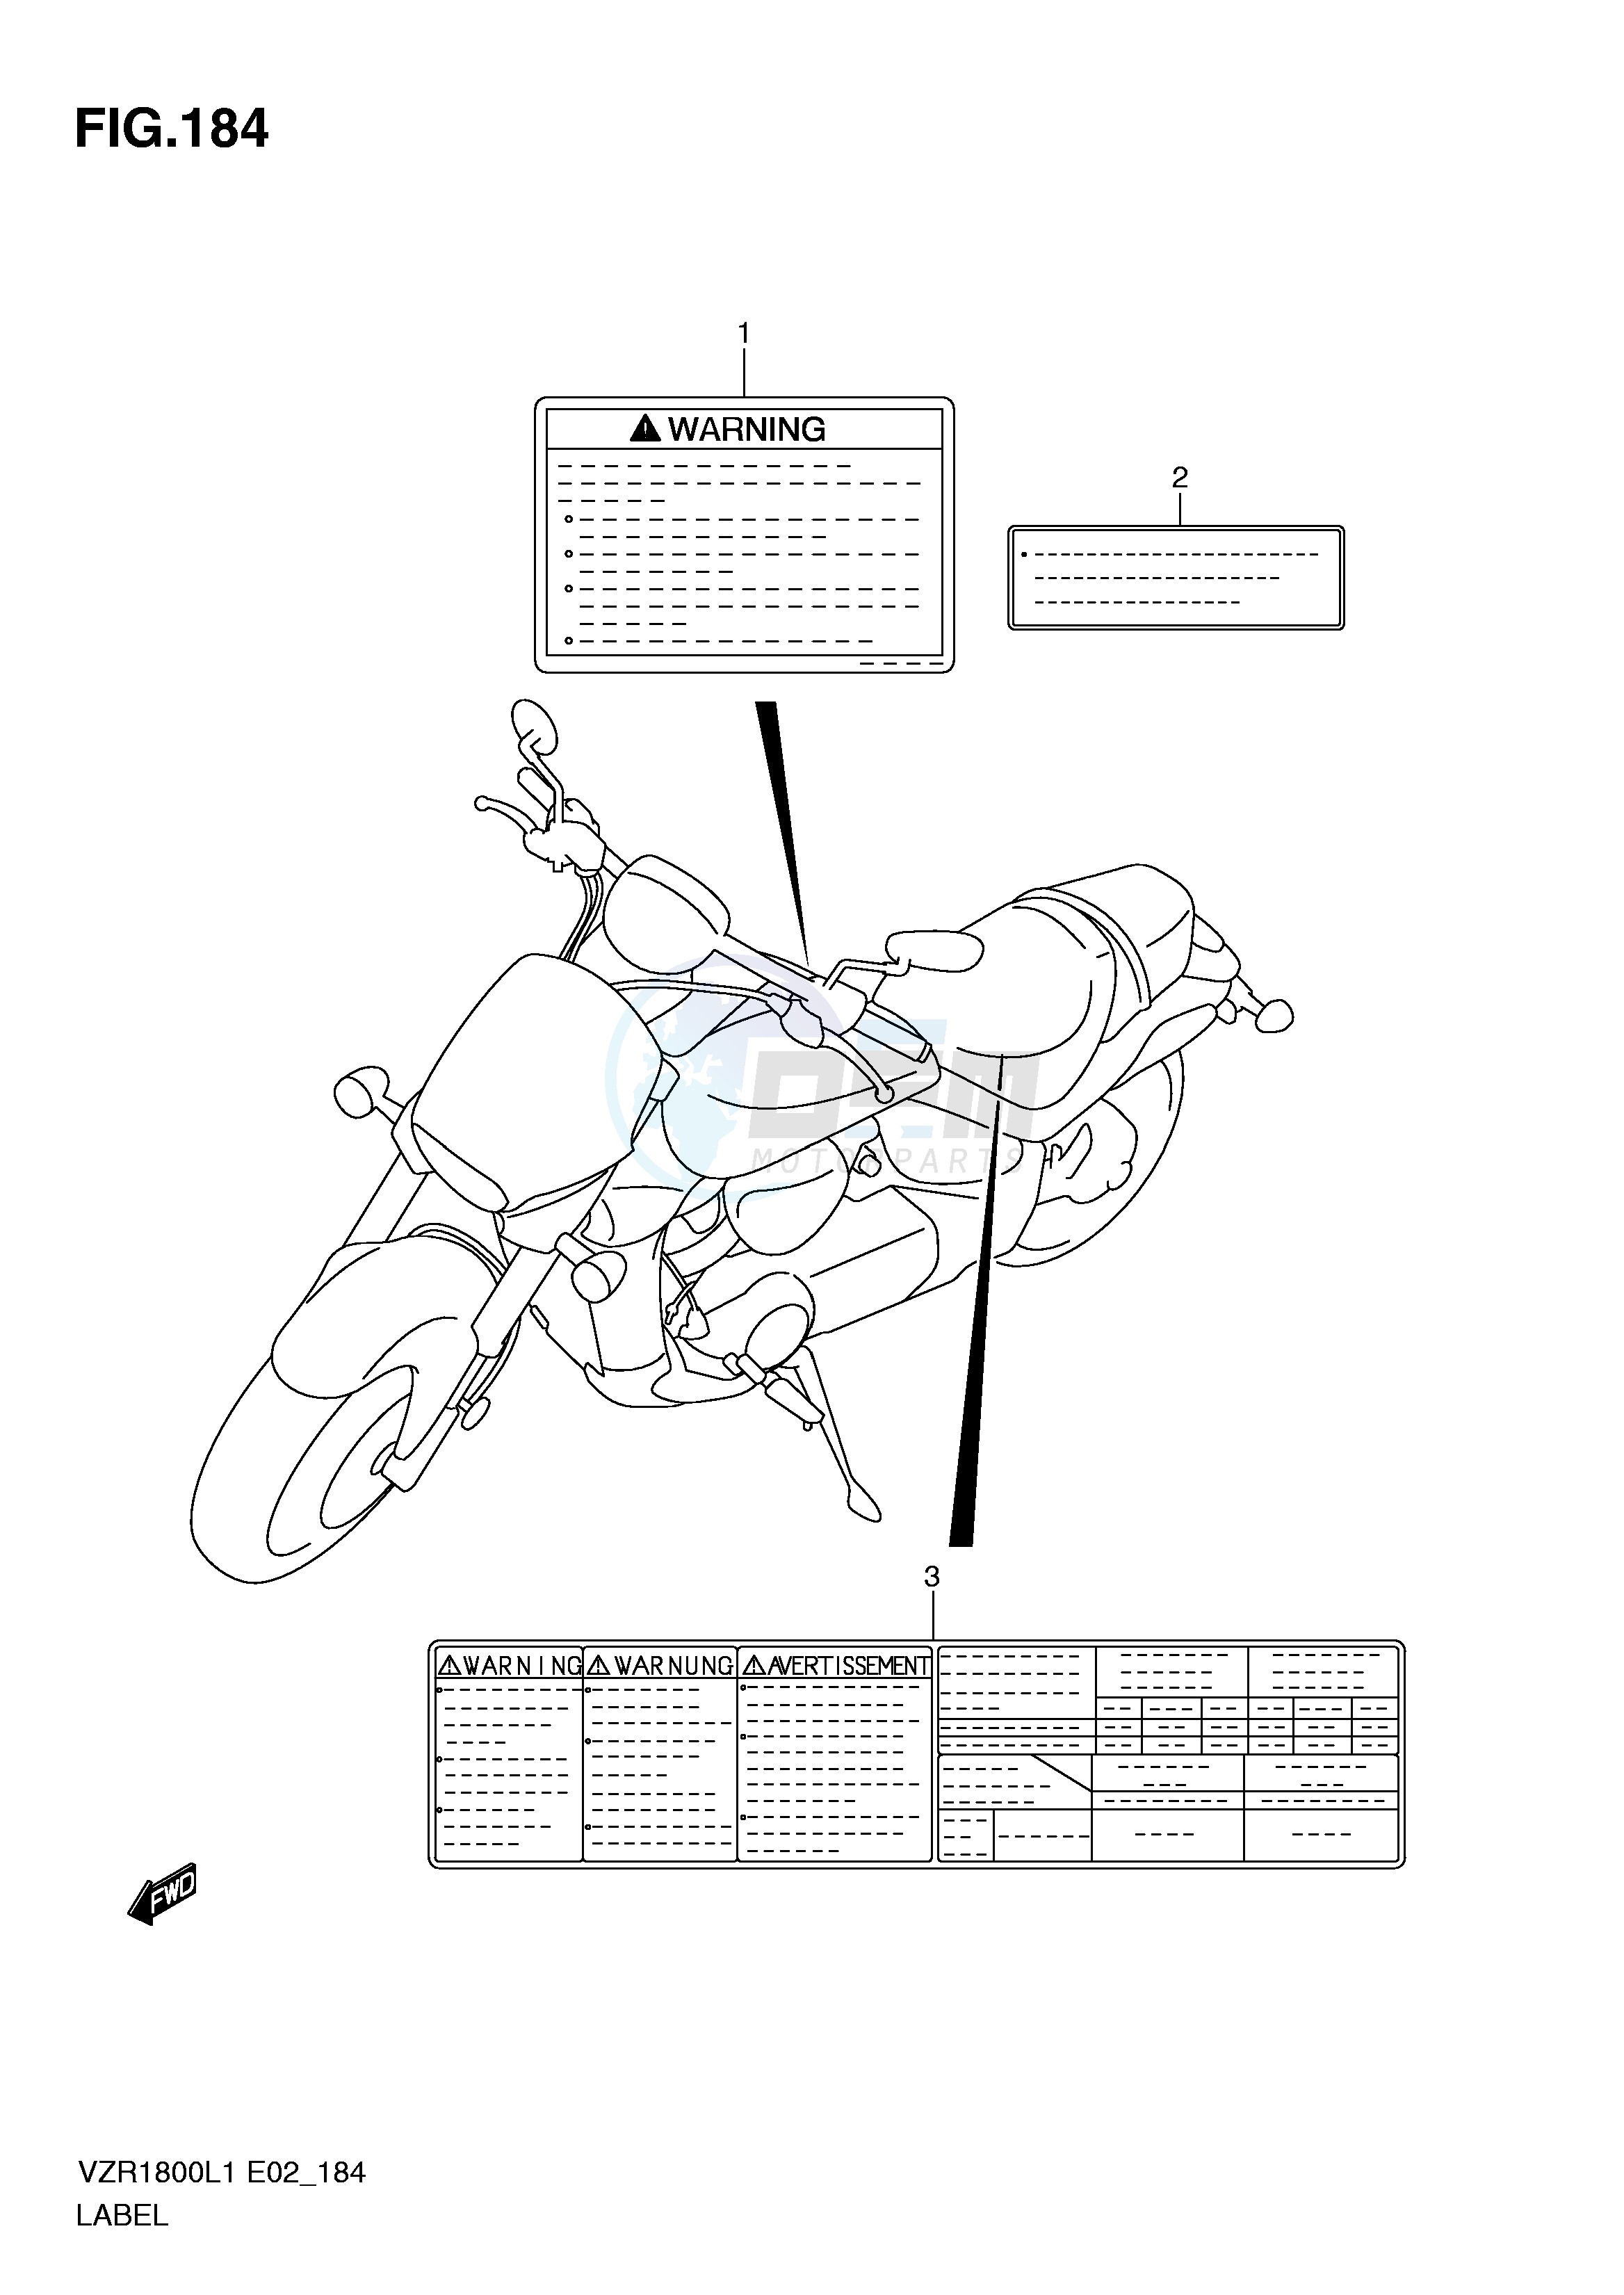 LABEL (VZR1800L1 E19) blueprint